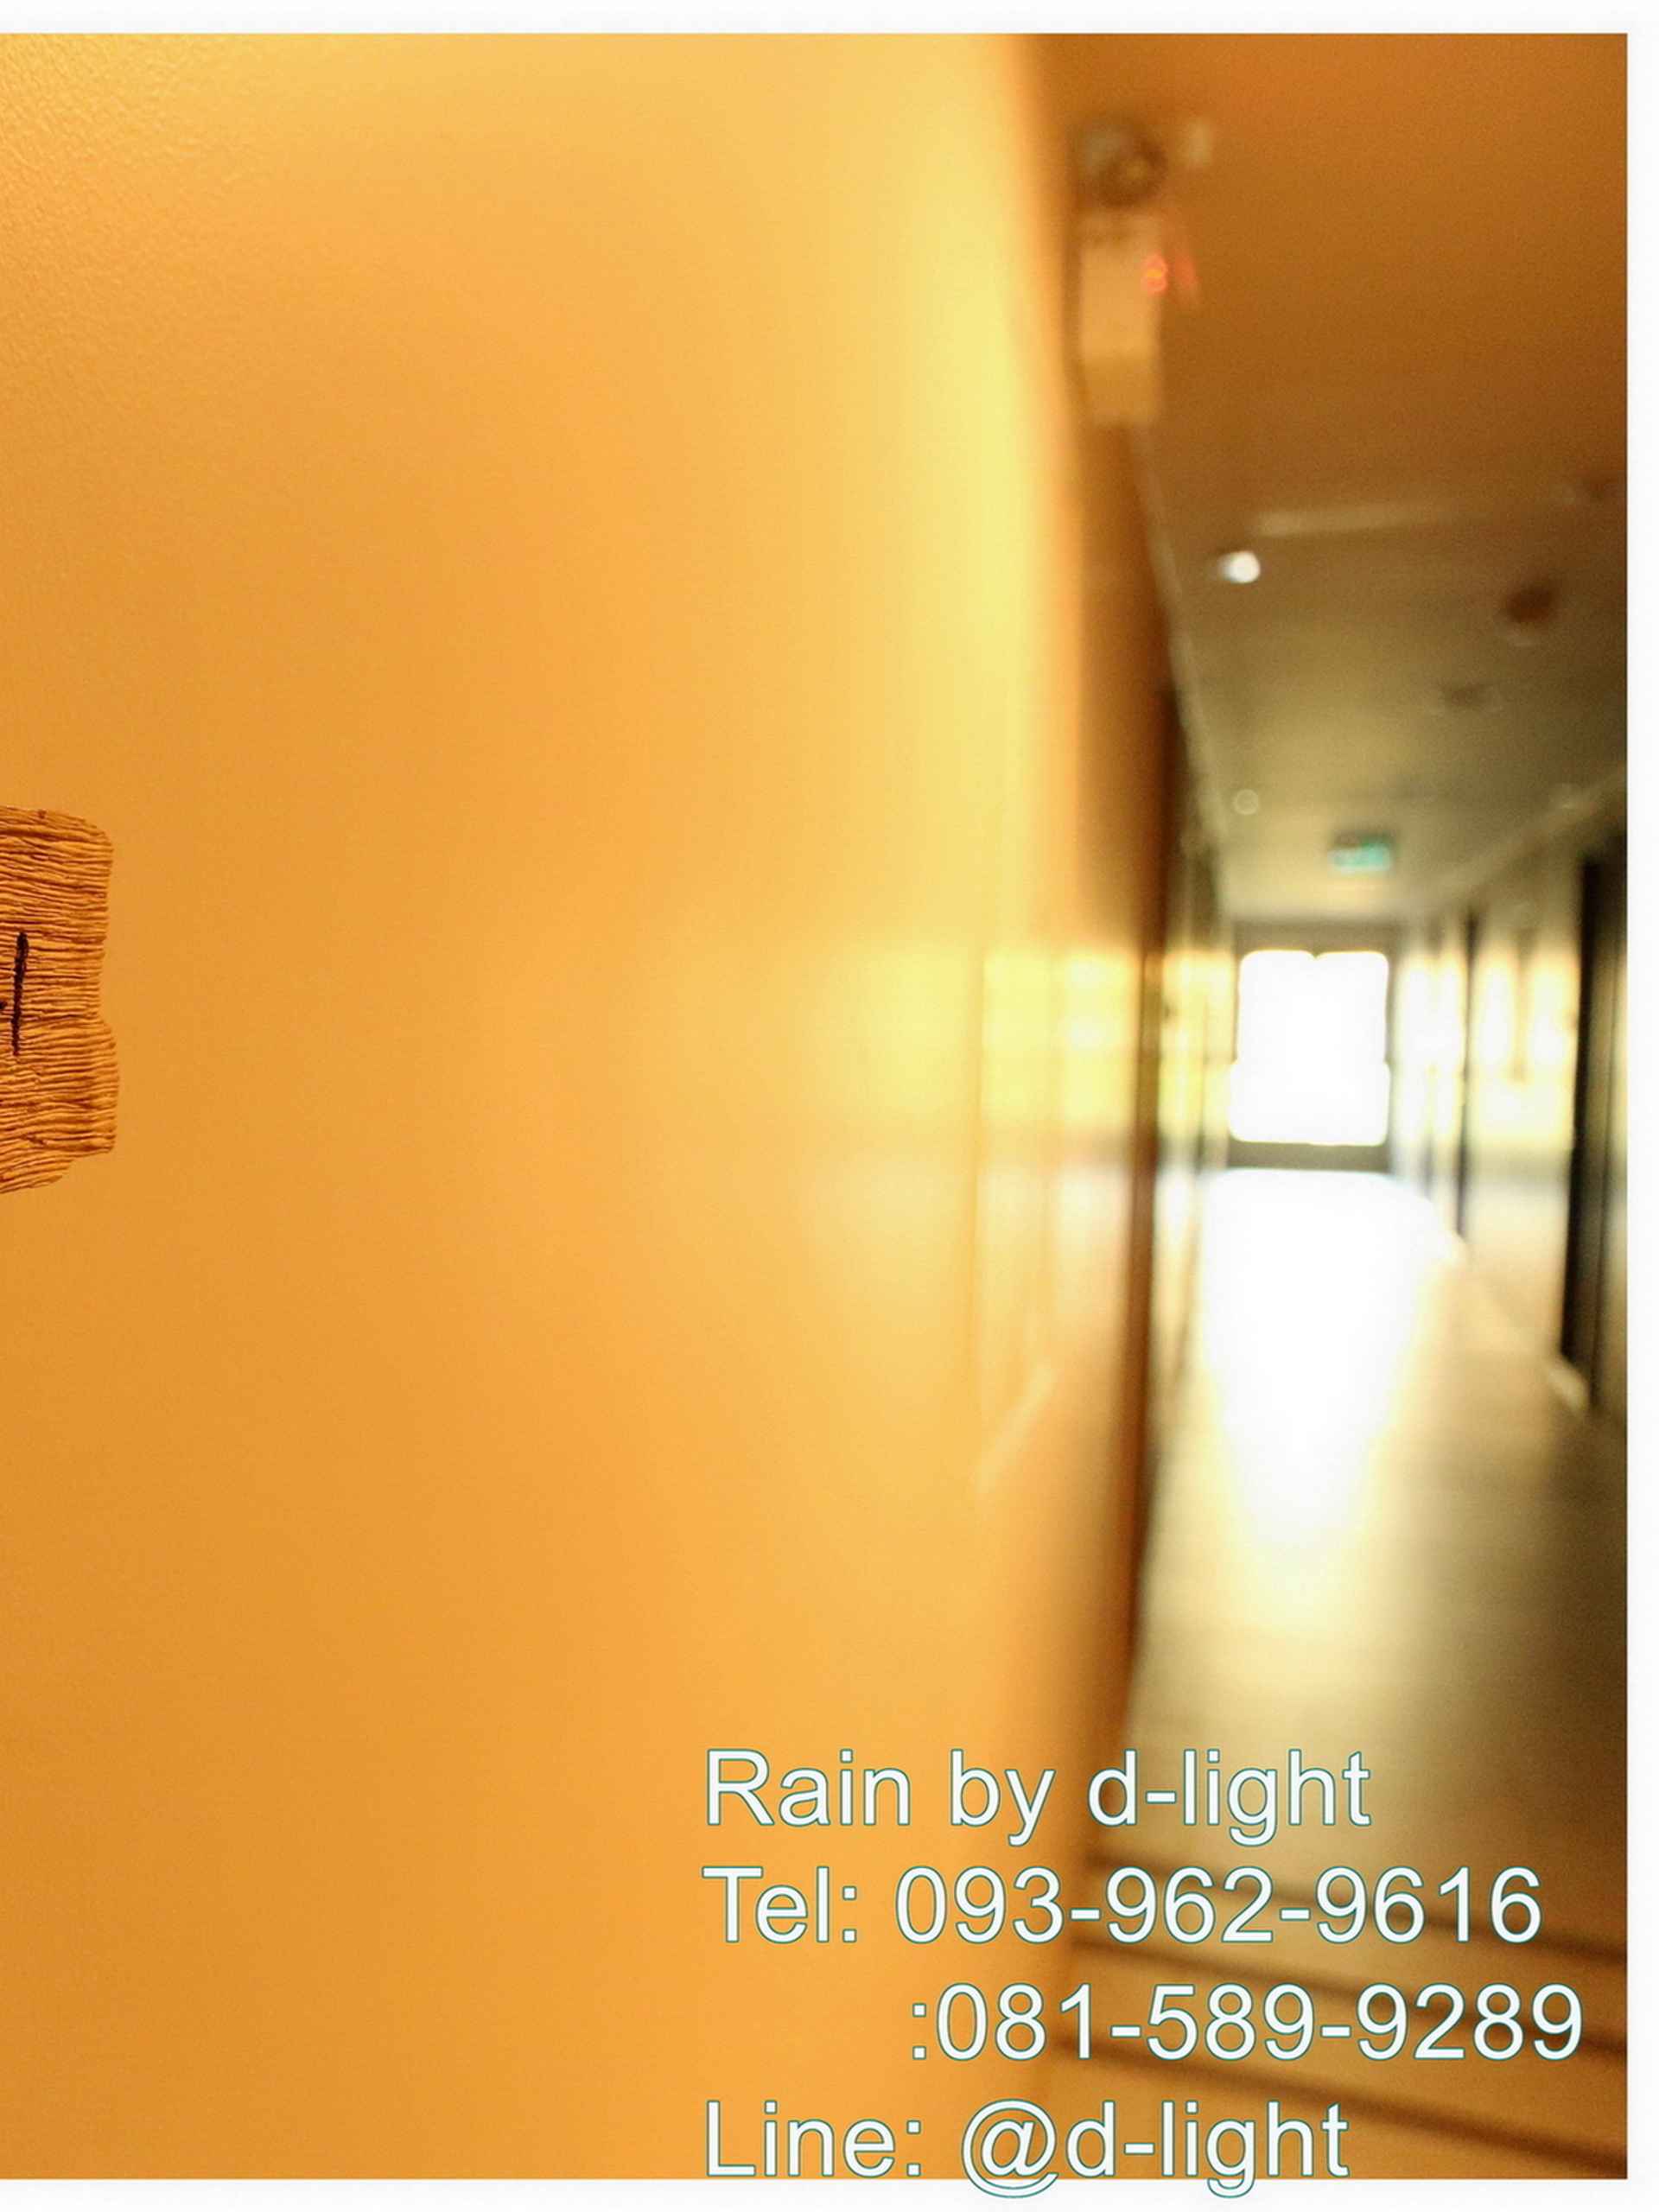 ล็อบบี้ Rain ChaAm Huahin by D-light